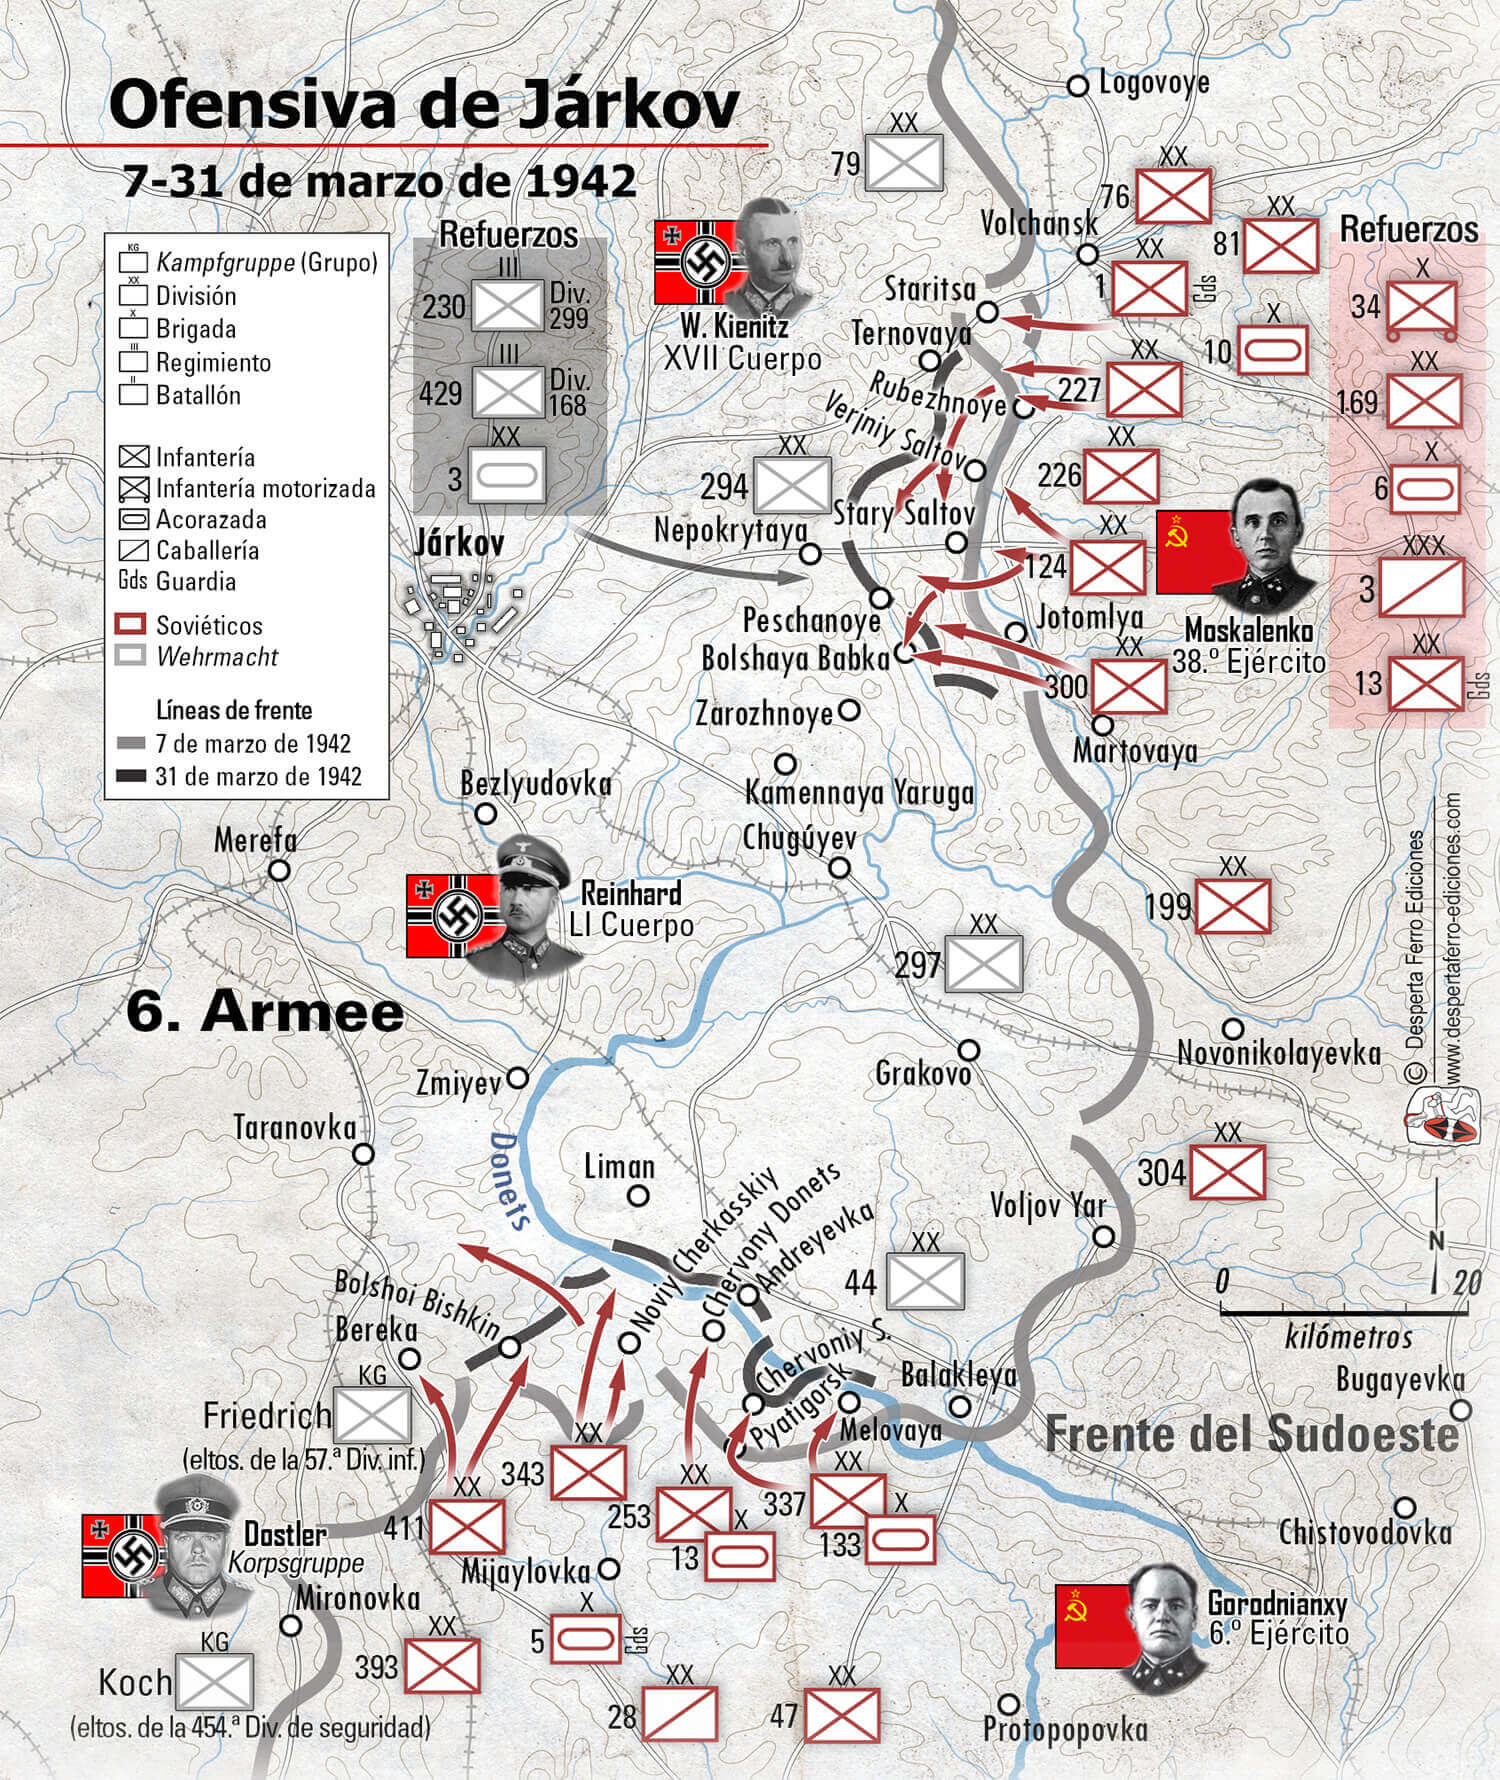 Mapa de la ofensiva de Járkov (7 al 31 de marzo de 1942)